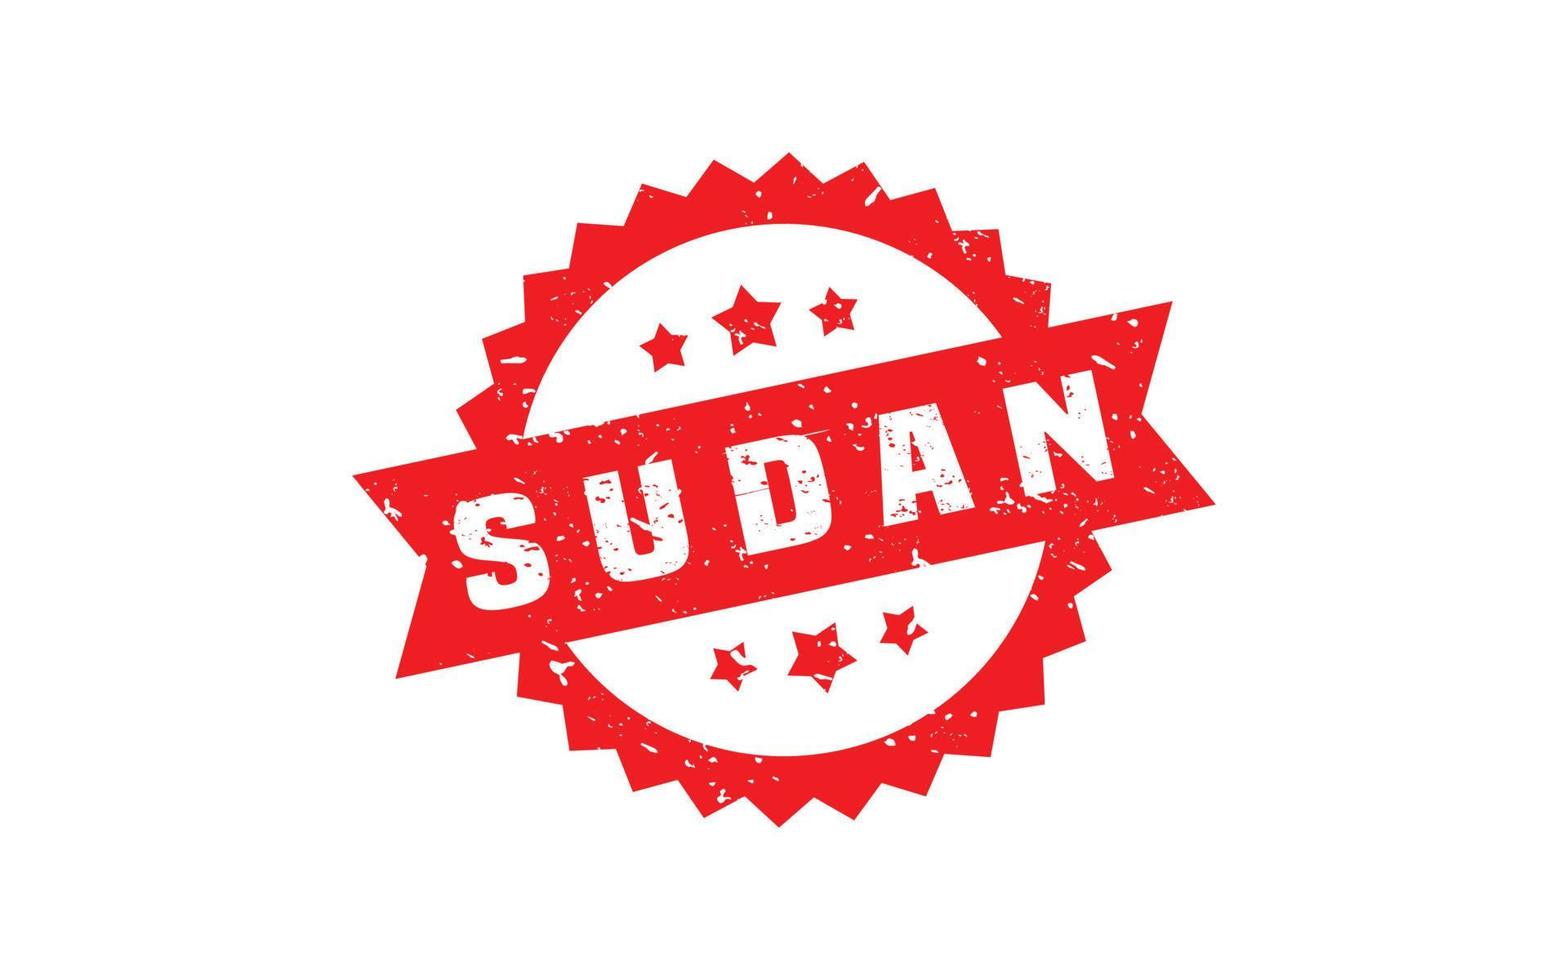 Sudán sello caucho con grunge estilo en blanco antecedentes vector